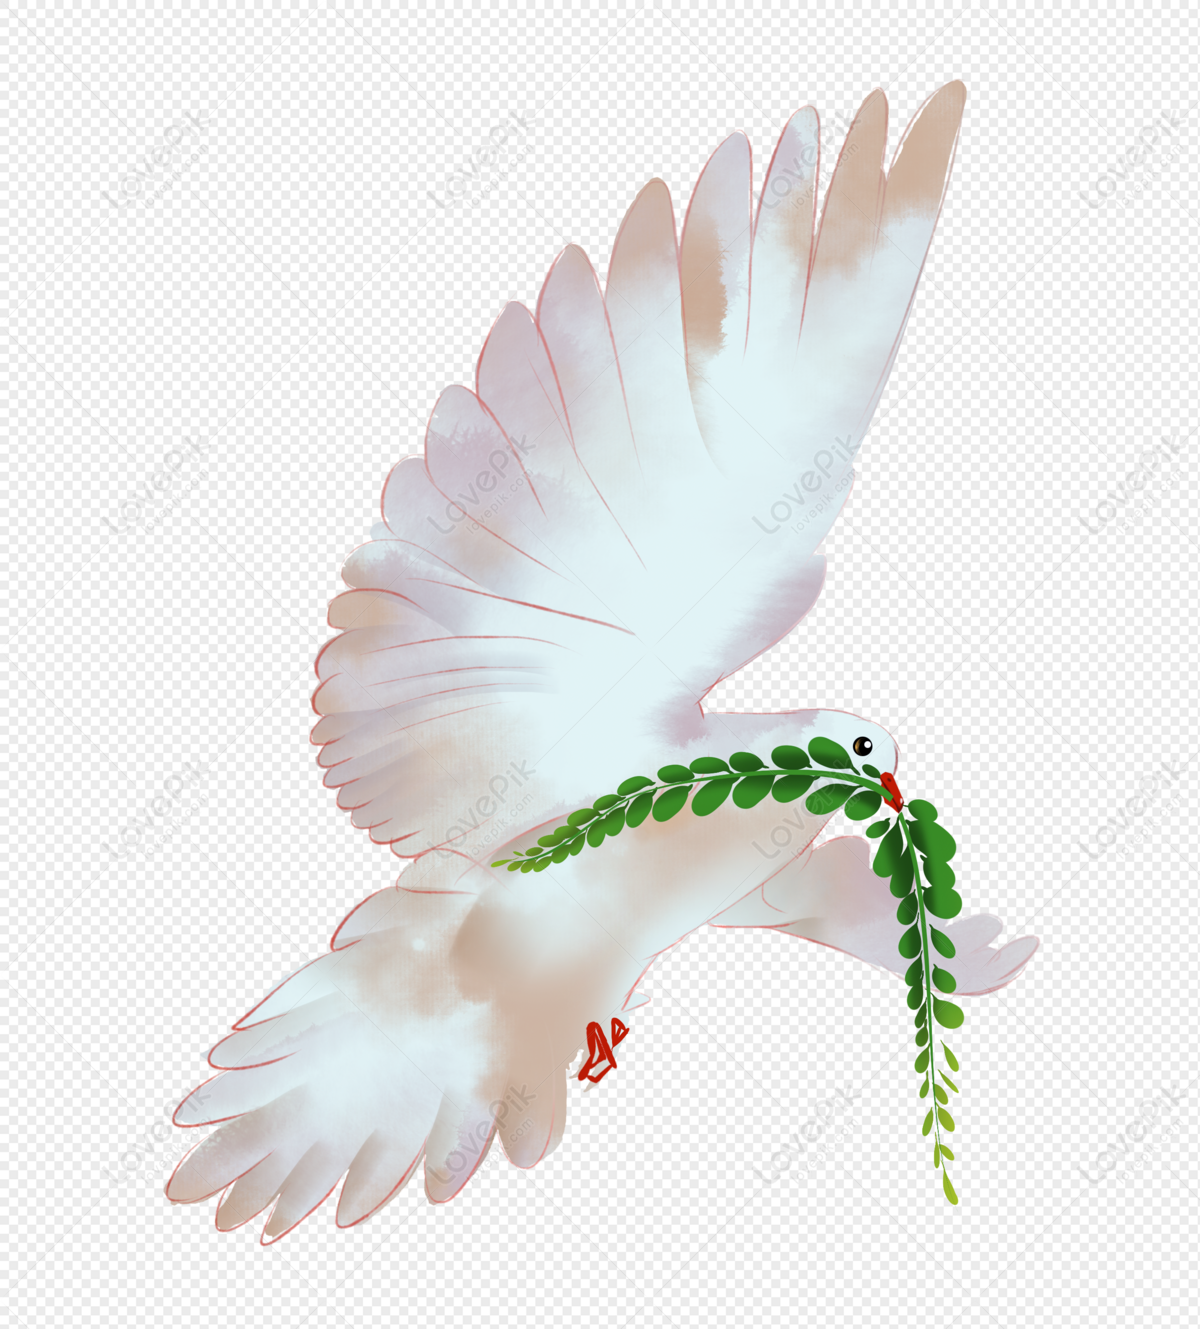 Hình ảnh Chim Bồ Câu Hòa Bình Thế Giới PNG Miễn Phí Tải Về - Lovepik